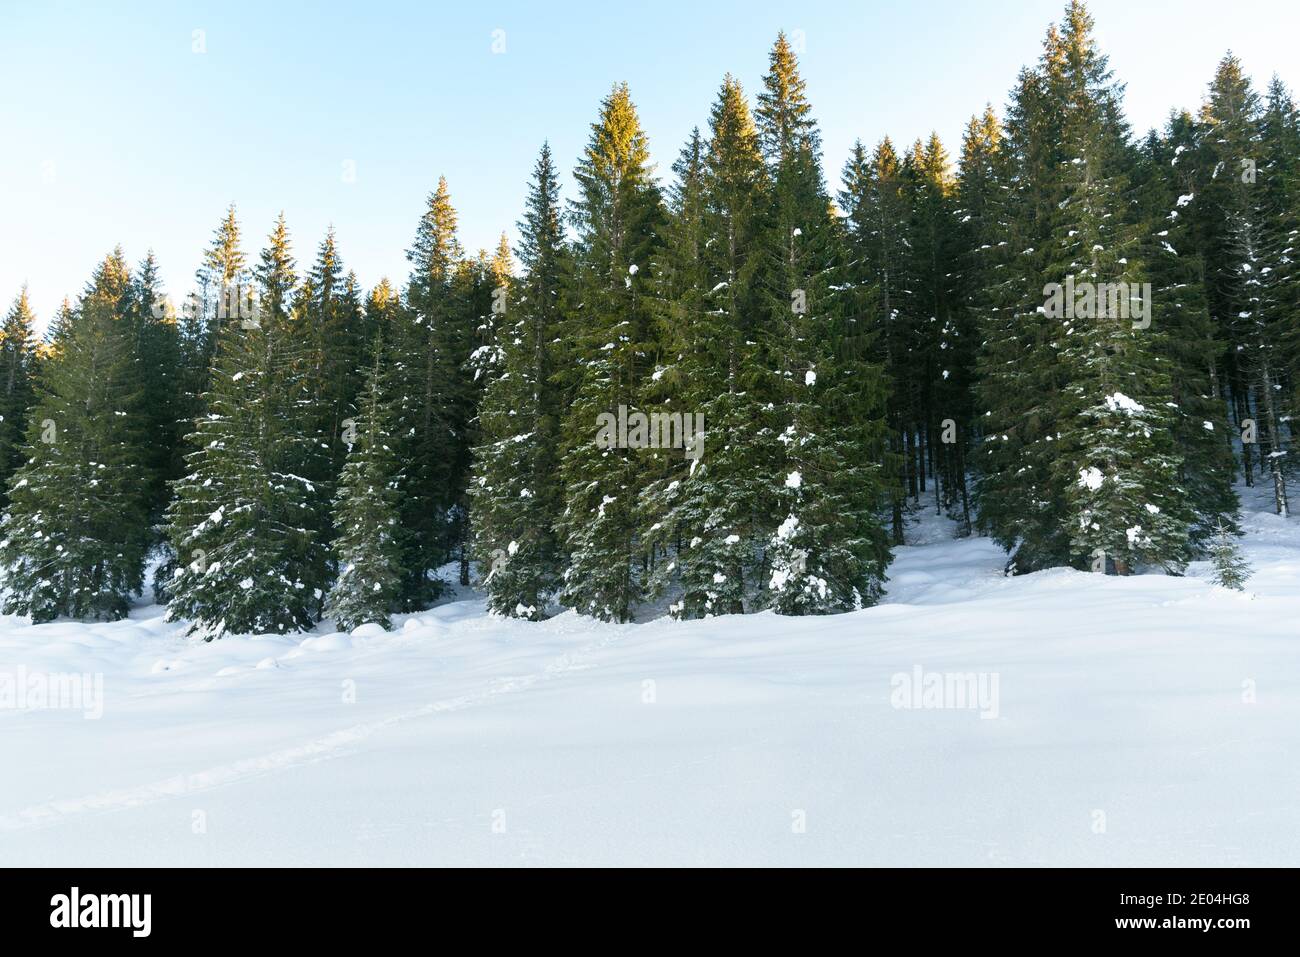 Forêt de pins enneigés dans les montagnes et ciel clair à coucher de soleil Banque D'Images